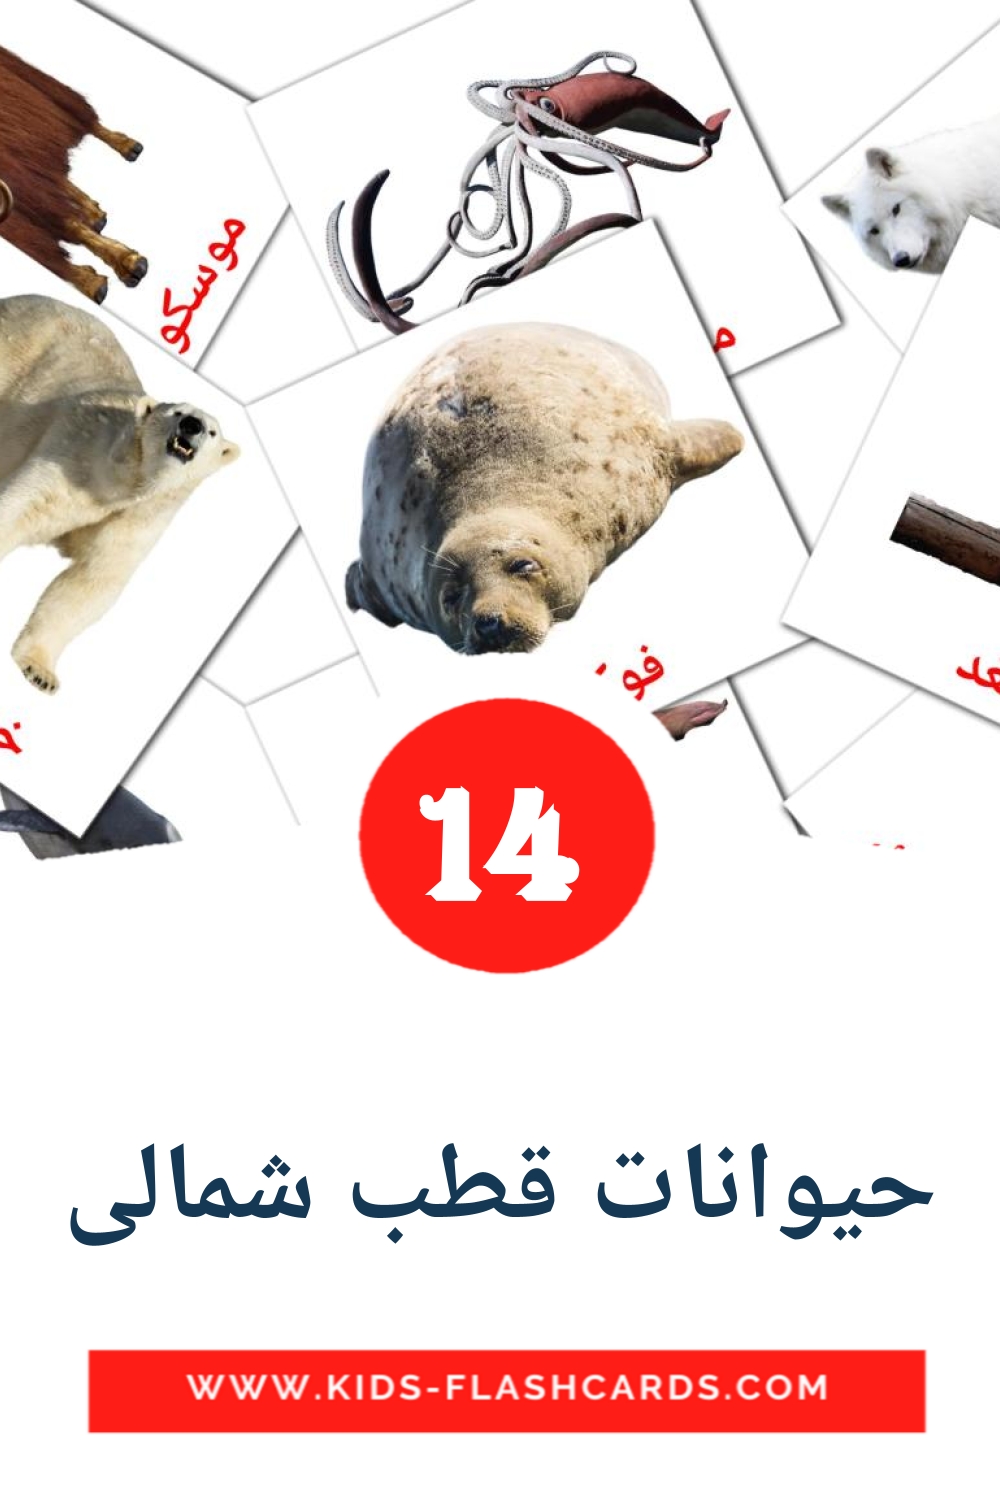 14 cartes illustrées de حیوانات قطب شمالی pour la maternelle en persan